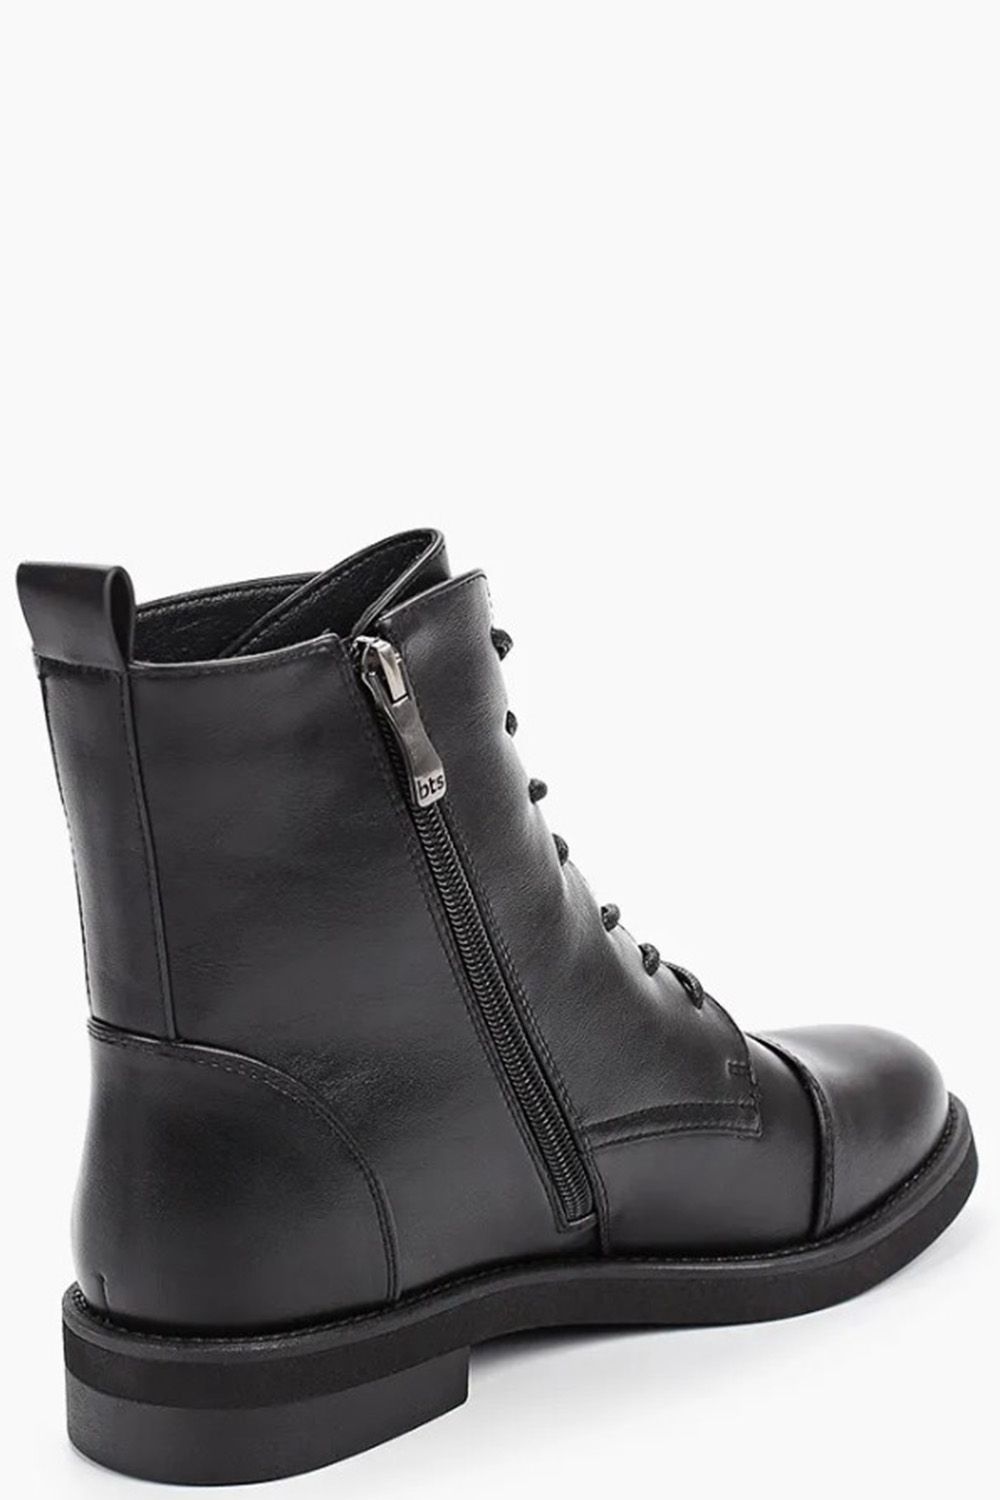 Ботинки Betsy, размер 37, цвет черный 998364/10-03 - фото 3